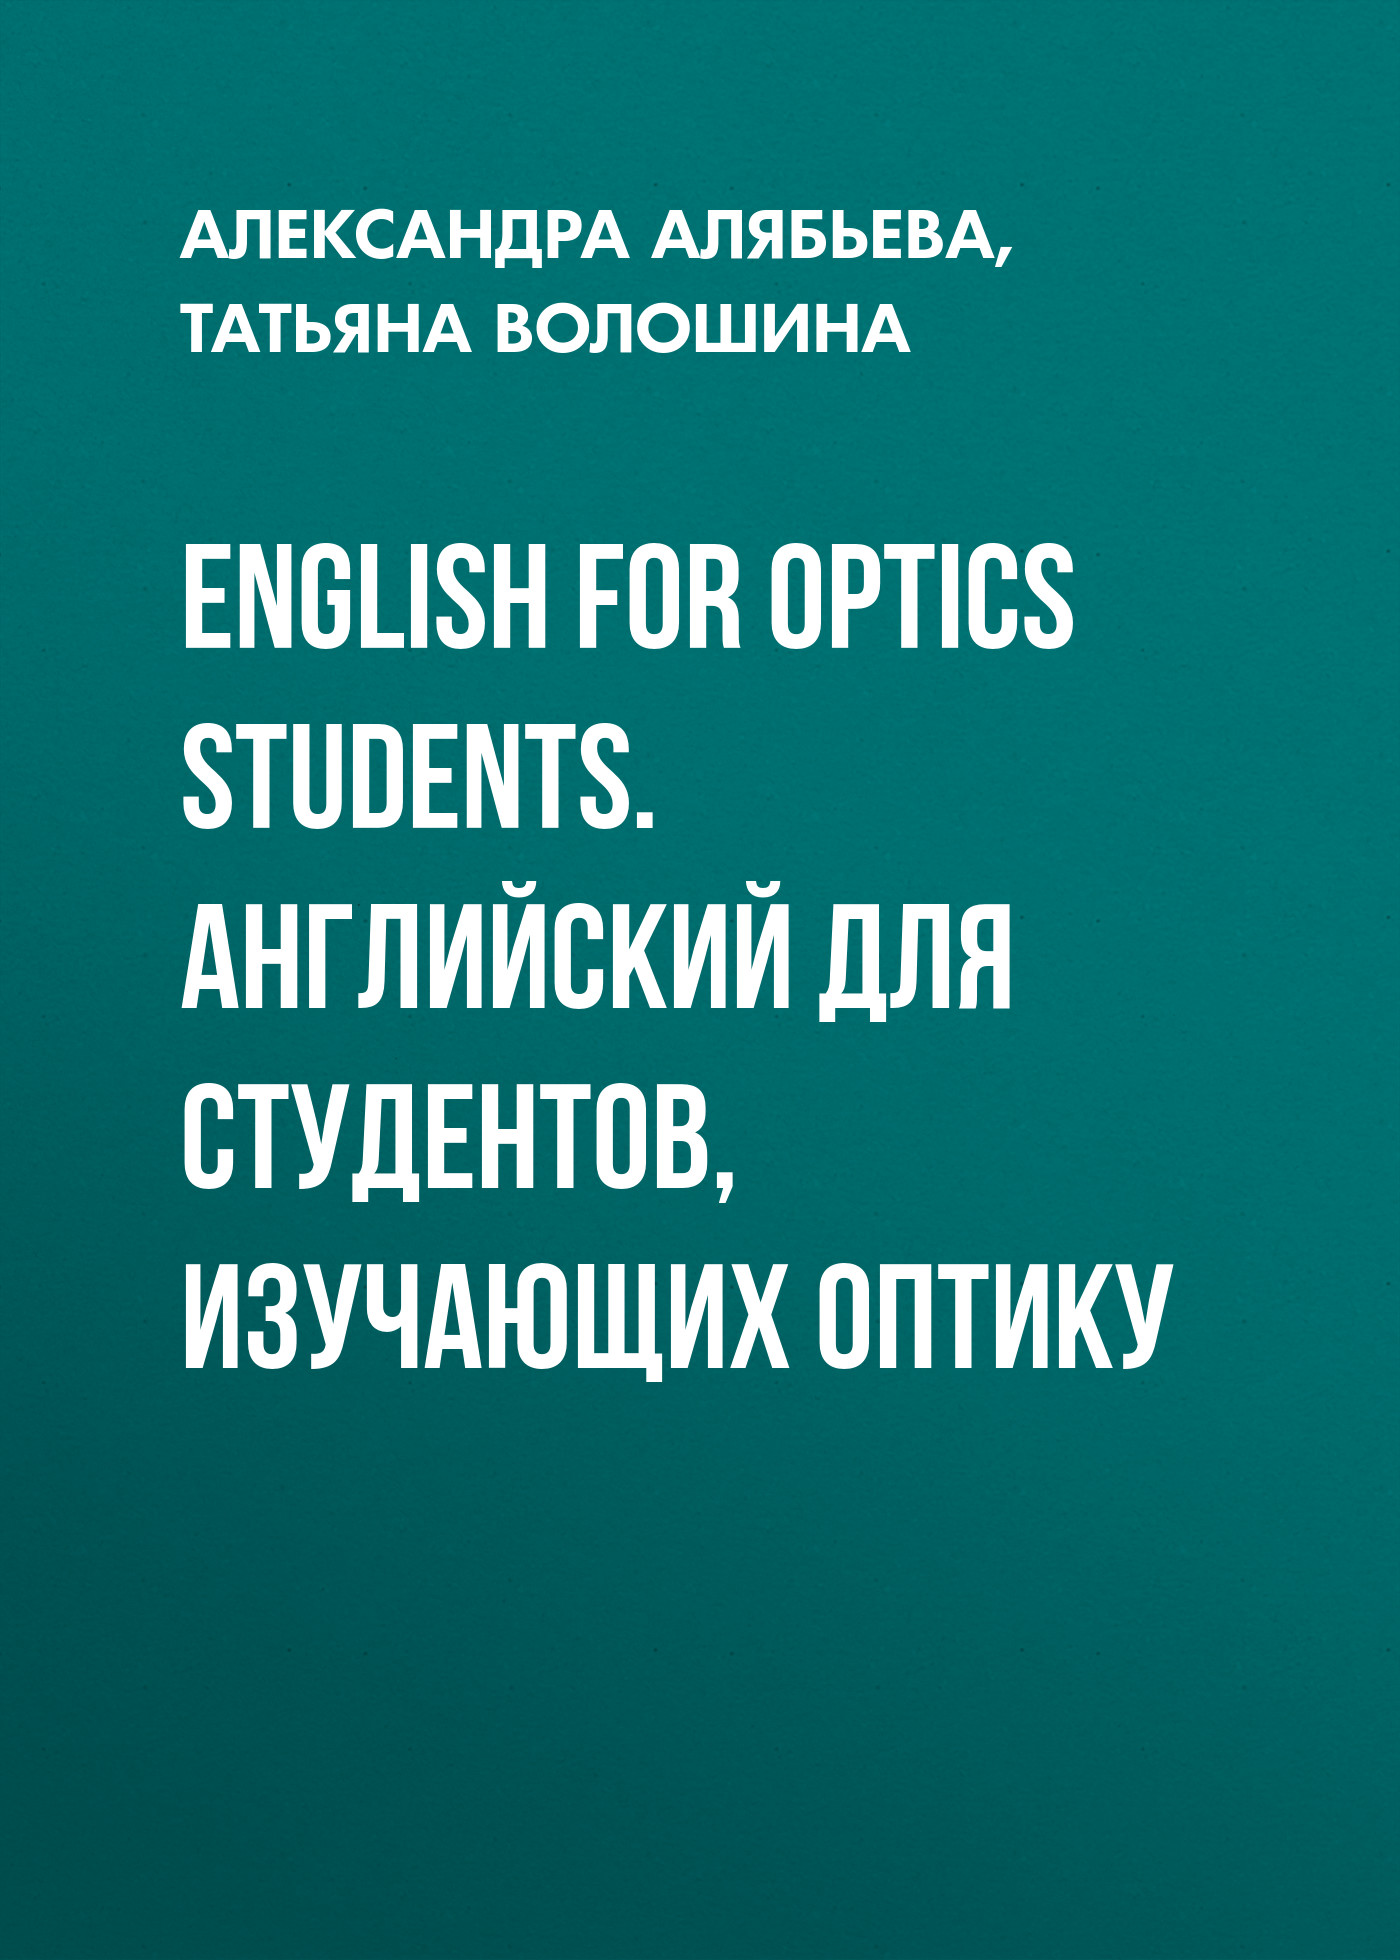 Александра Алябьева English for Optics Students. Английский для студентов, изучающих оптику